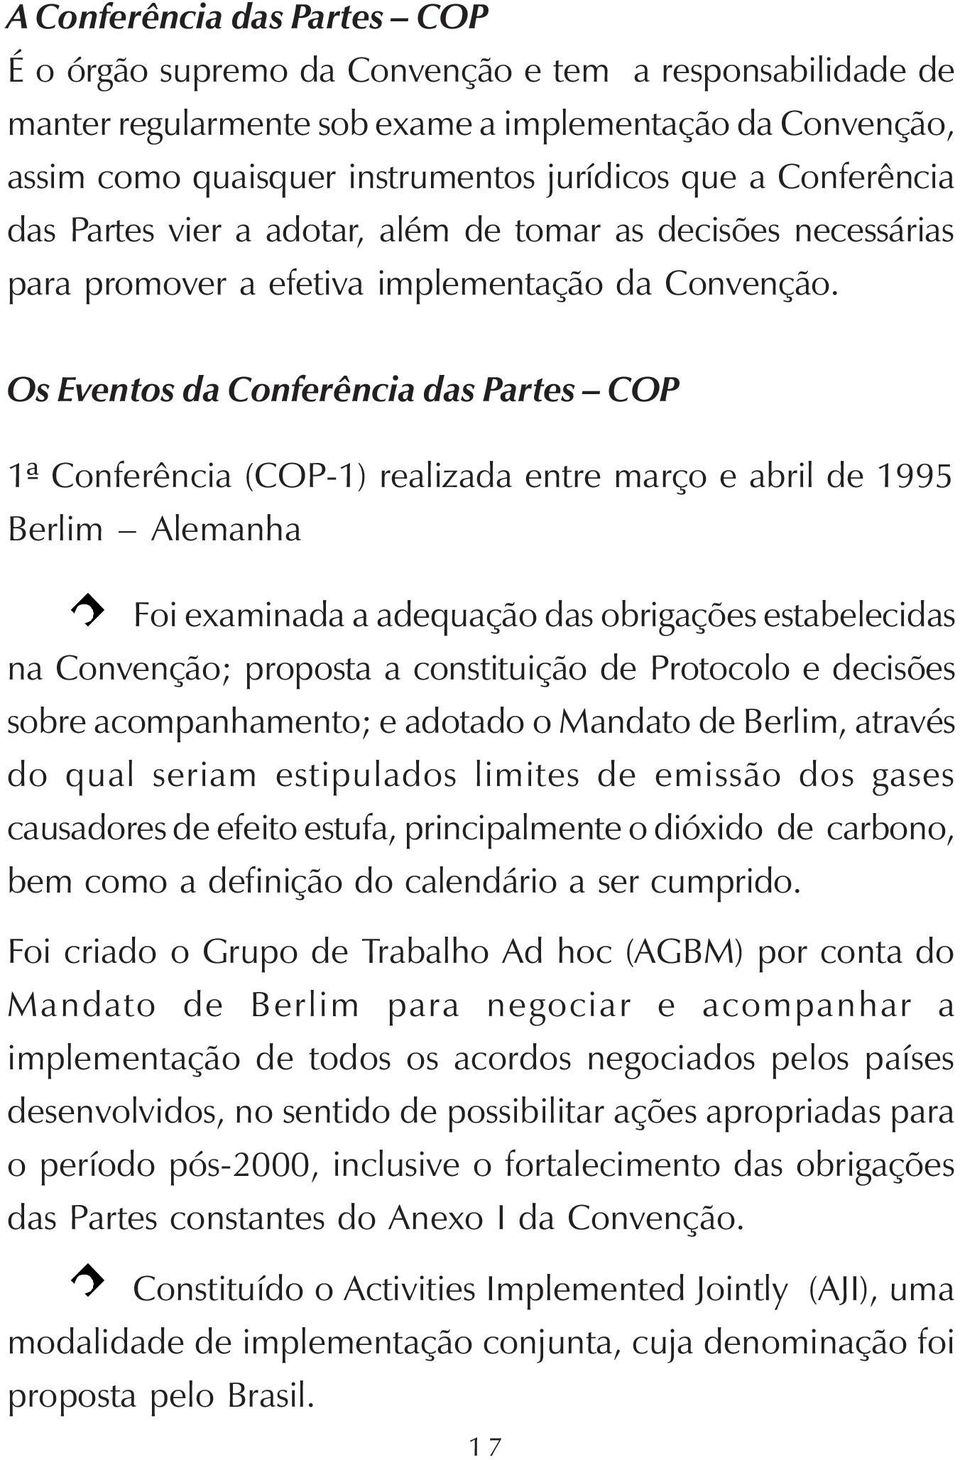 Os Eventos da Conferência das Partes COP 1ª Conferência (COP-1) realizada entre março e abril de 1995 Berlim Alemanha Foi examinada a adequação das obrigações estabelecidas na Convenção; proposta a